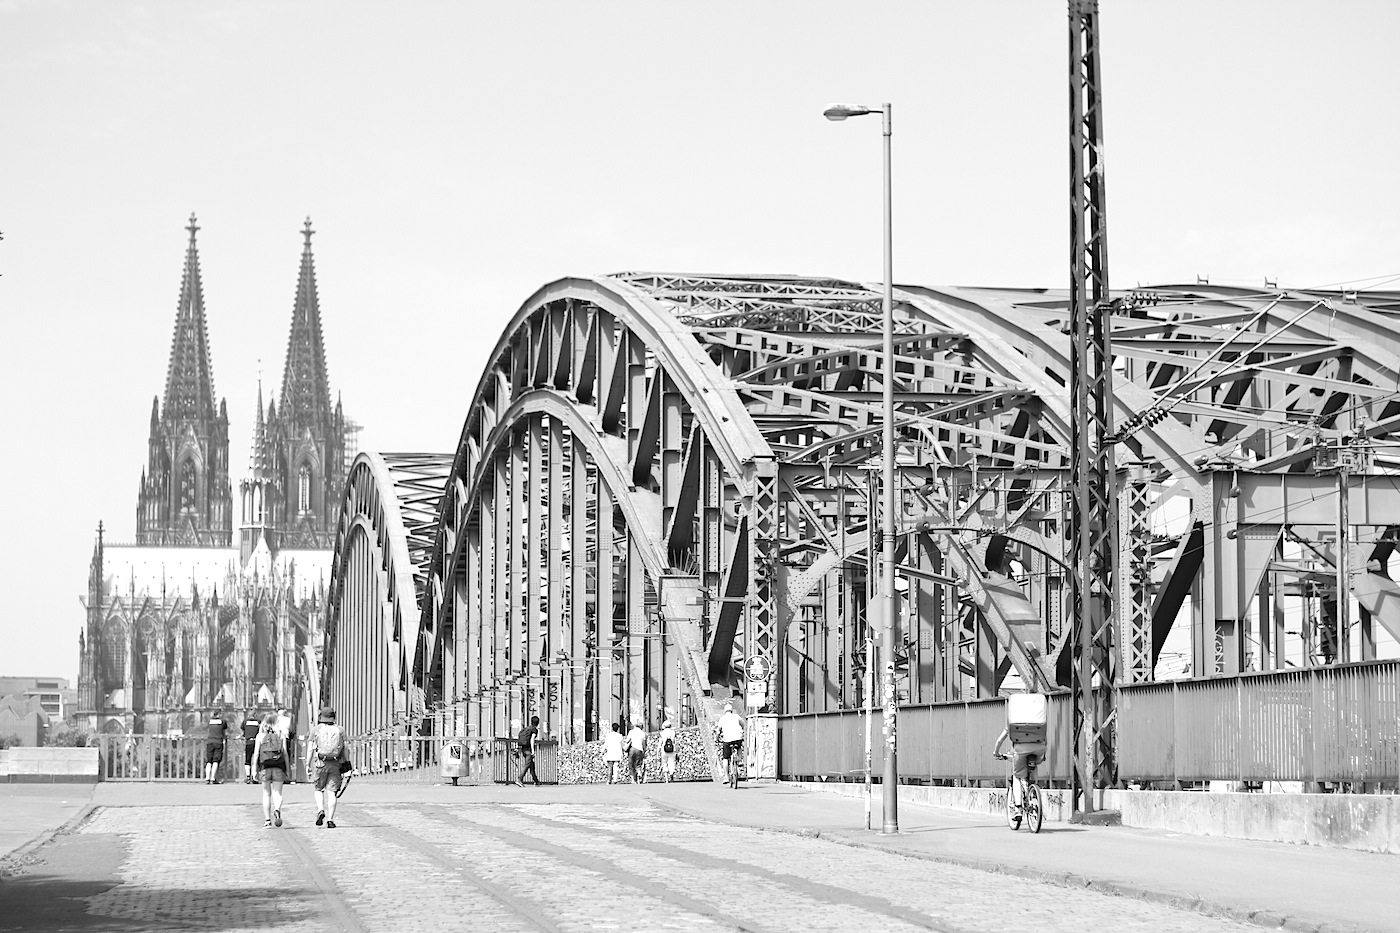 Dom von Osten. mit der 1911 errichteten Hohenzollernbrücke. Franz Schwechten entwarf die Portale und Türme; Friedrich Dircksen, Fritz Beermann (EBD Köln) waren für die Stahlbögen und Konstruktion verantwortlich. Die Bogenbrücke ist knapp 410 Meter lang und knapp 30 Meter breit.